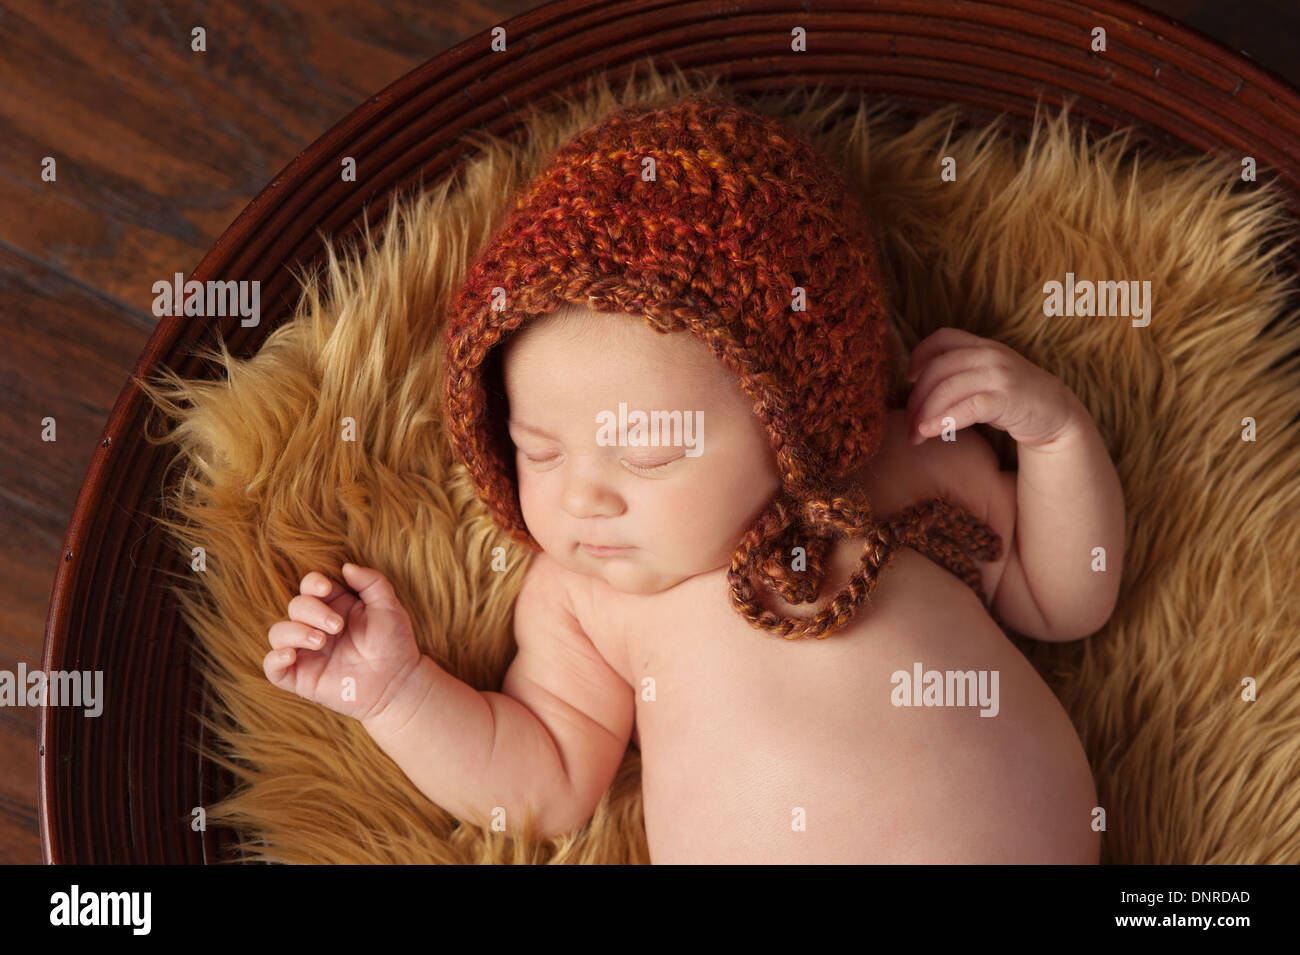 Ein Portrait eines schlafenden, zwei Wochen alten neugeborenen Mädchens tragen eine gehäkelte Mütze in den Farben des Herbstes. Stockfoto